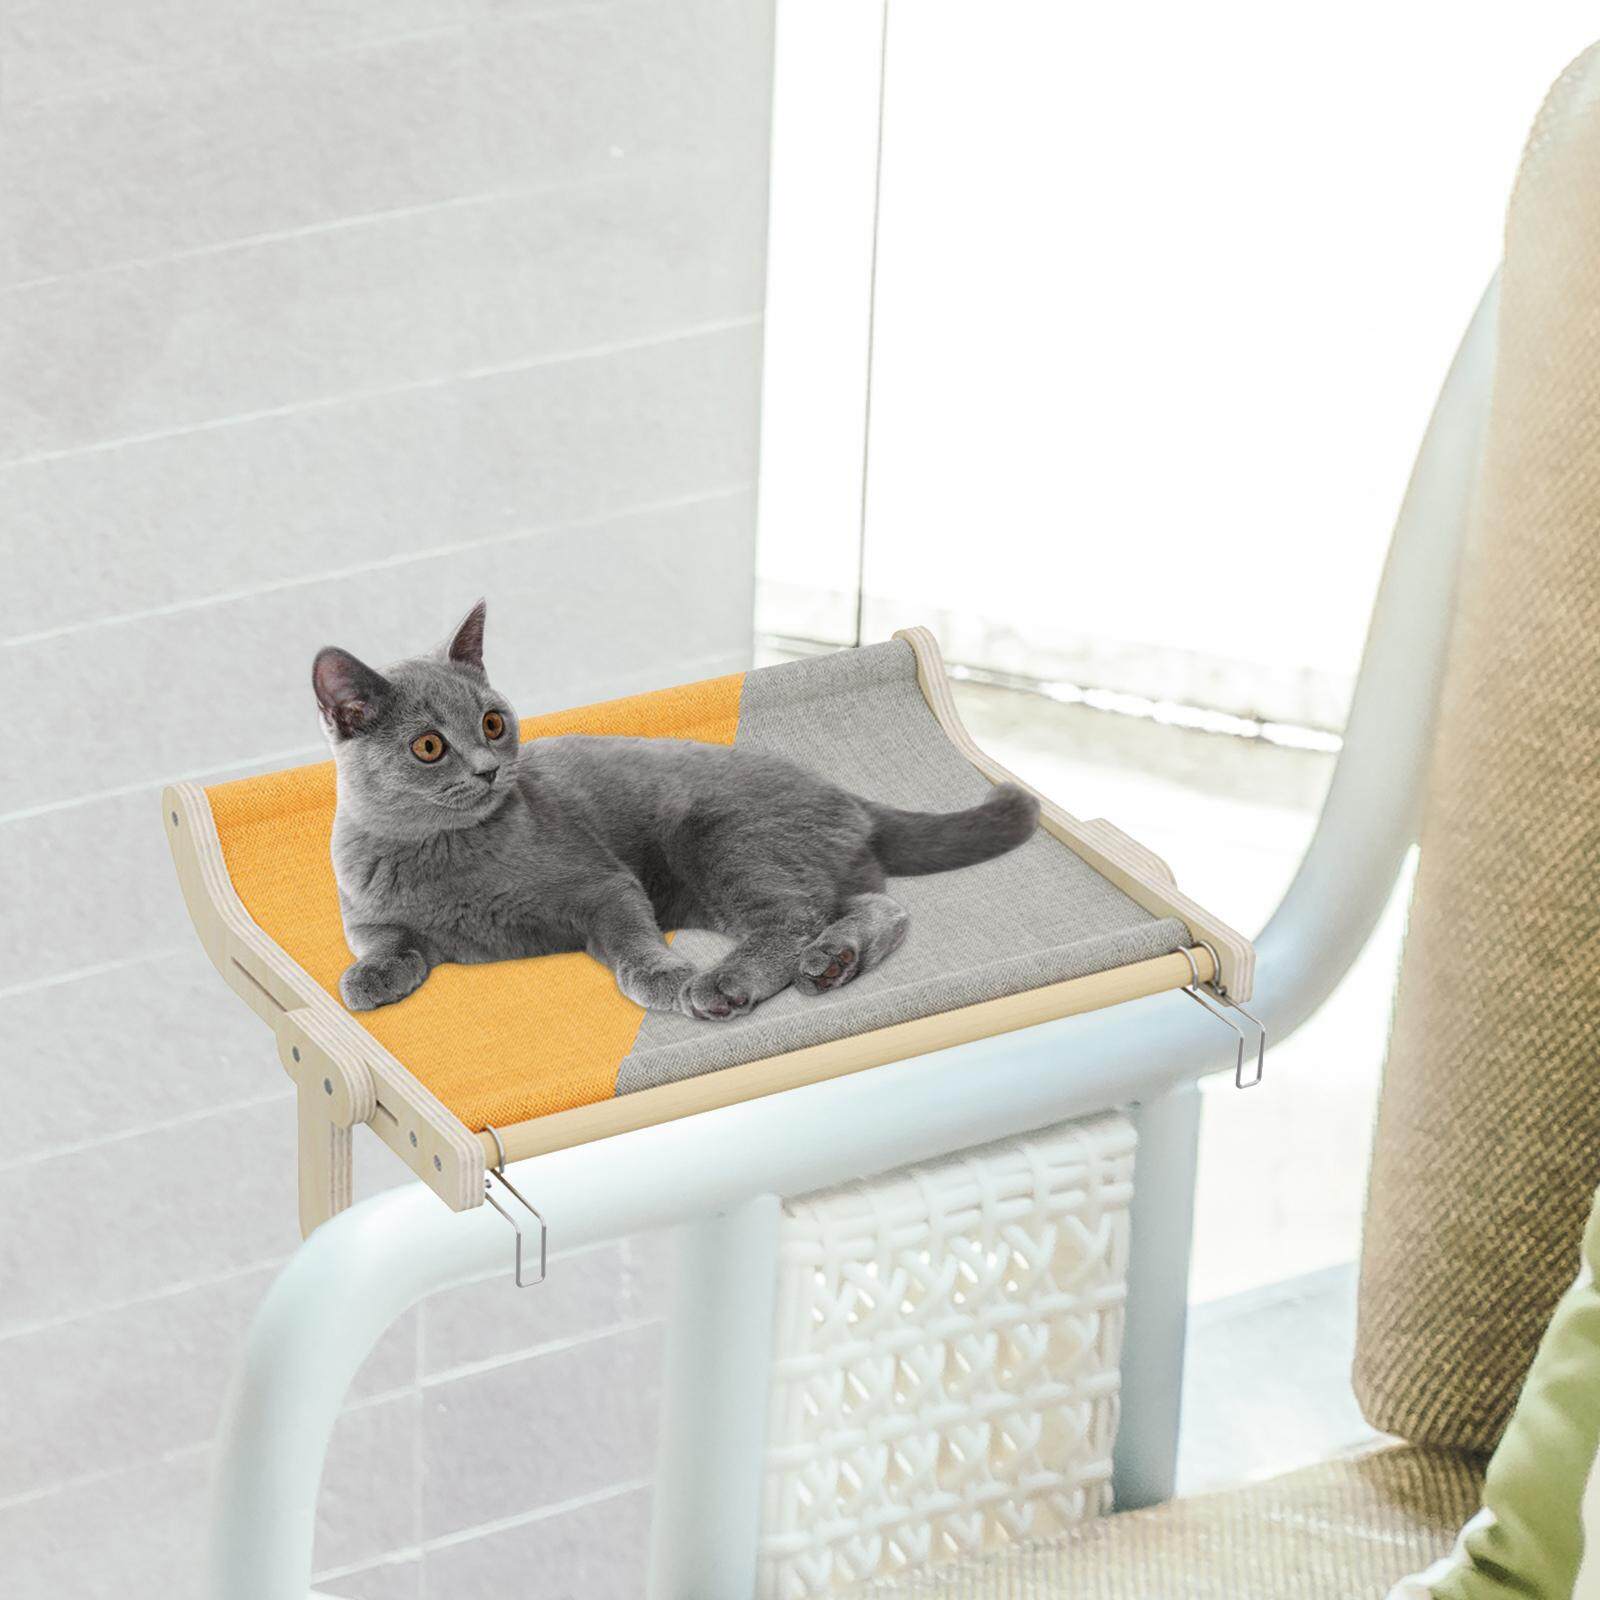 Aimishion chỗ nằm cho Mèo Bên Cửa Sổ võng cho mèo cho cửa sổ gỗ phòng chờ